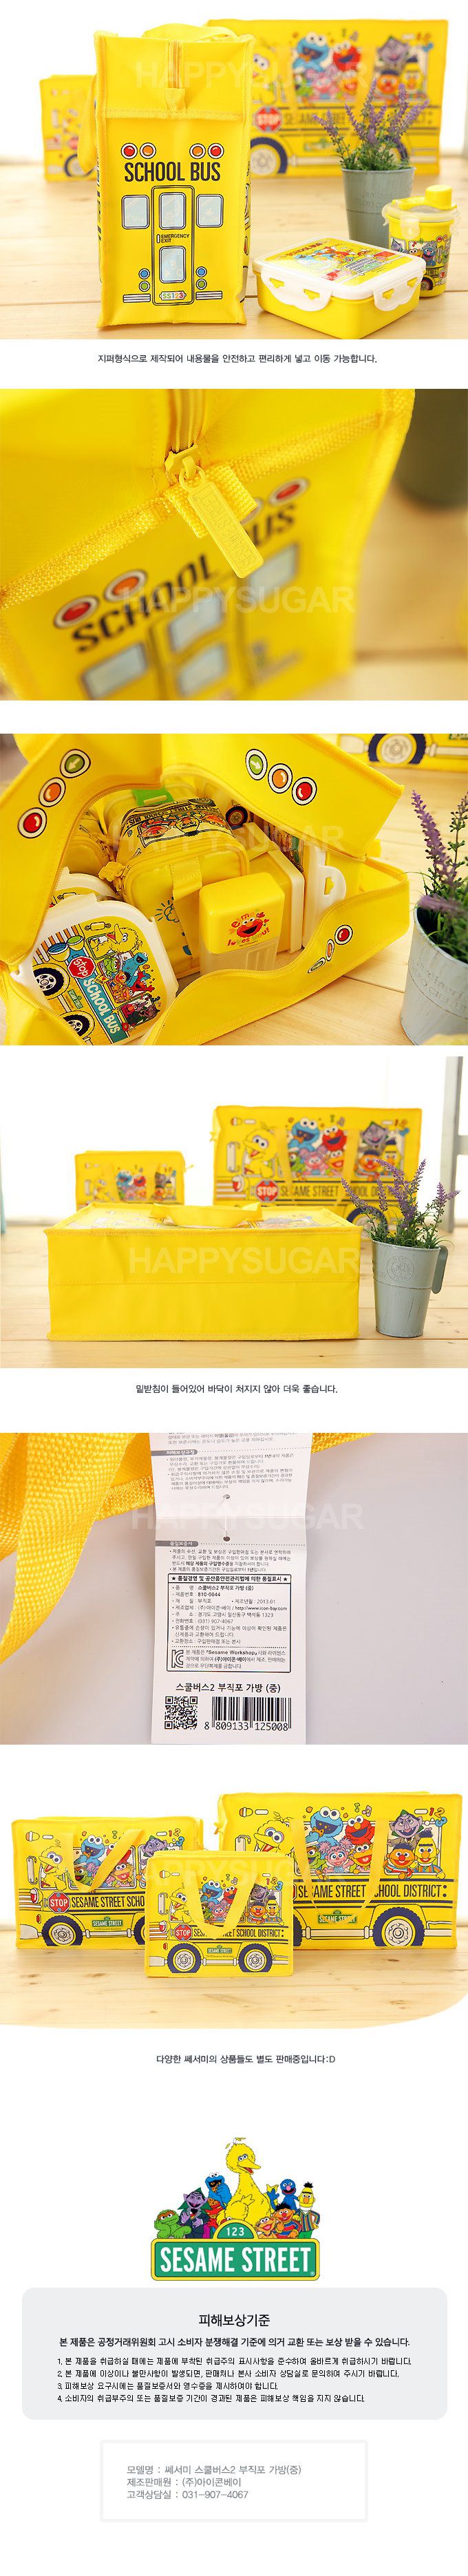 韓國Sesame Street芝麻街置物袋/手提袋(42.5*30.5*15.5cm)